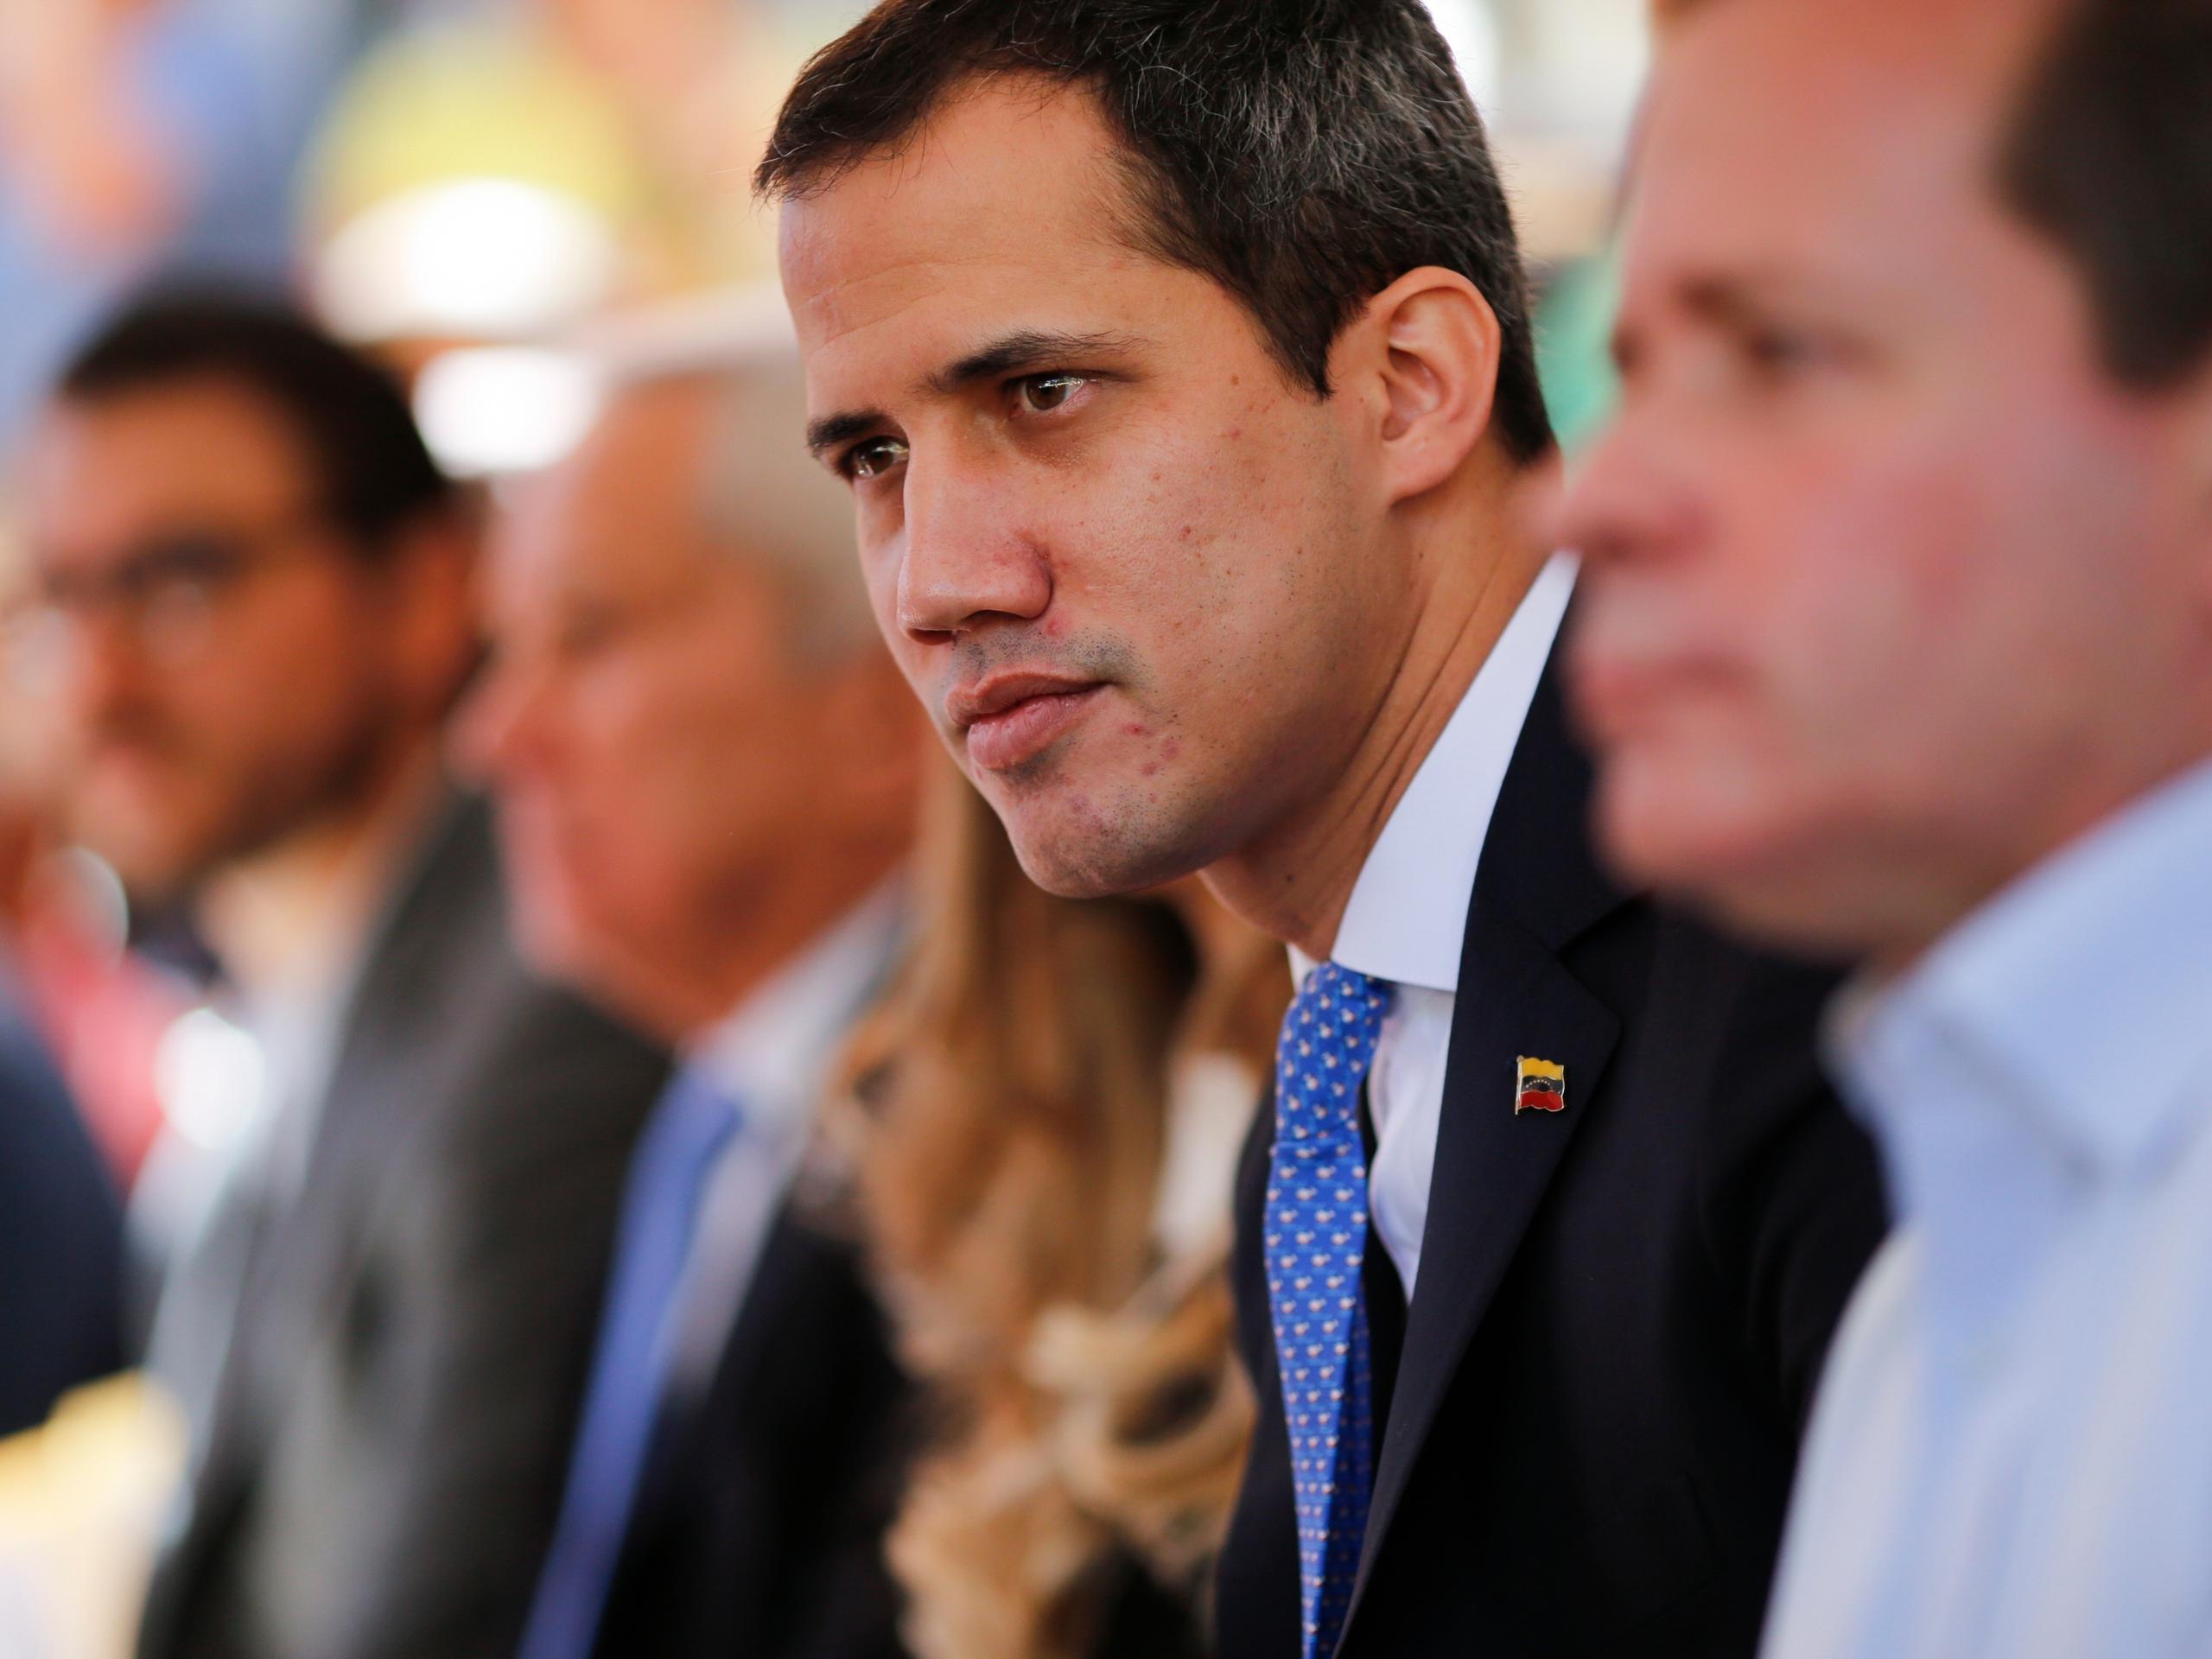 Por el momento, Washington no ha confirmado si invitará a Guaidó a la cumbre del próximo mes, la segunda organizada por Estados Unidos después de la edición original en Miami en 1994 y cuyo objetivo principal es diseñar un pacto migratorio regional.